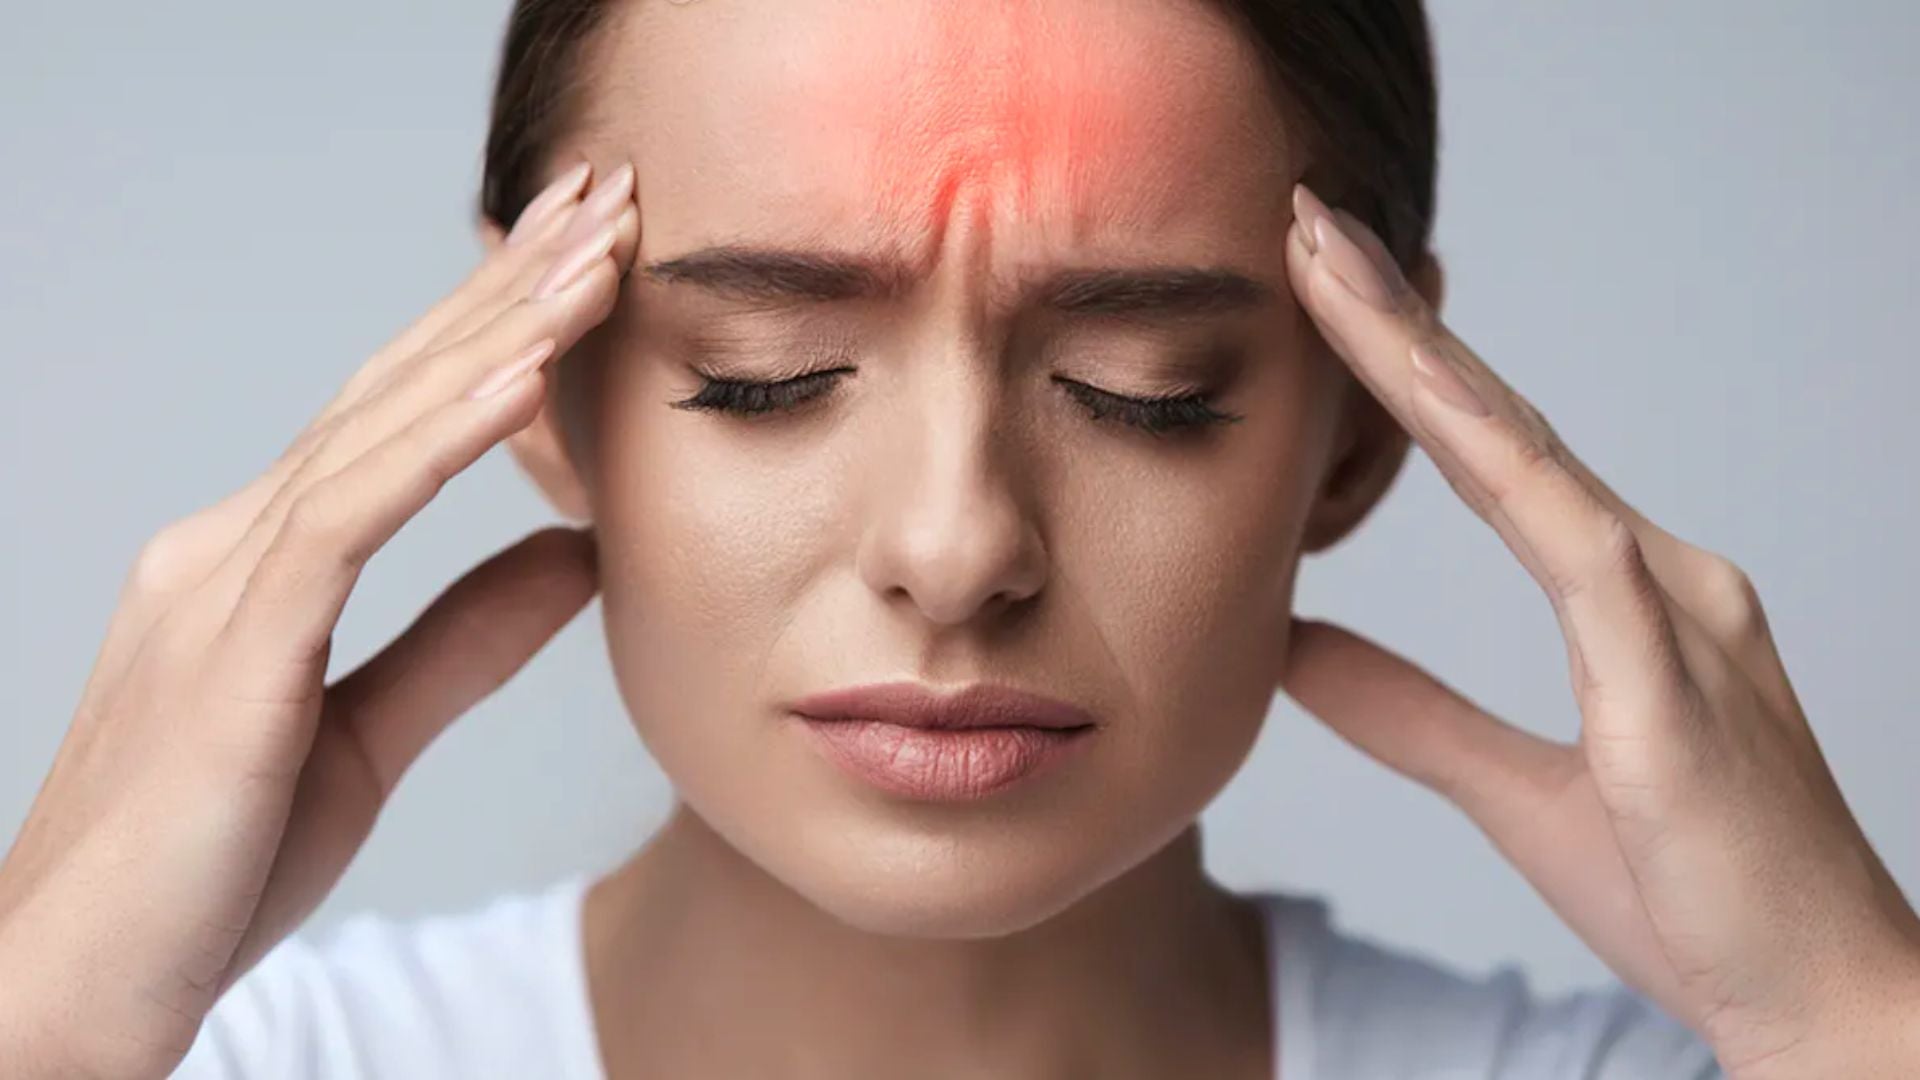 Apakah Alat Bantu Dengar Dapat Menyebabkan Sakit Kepala?